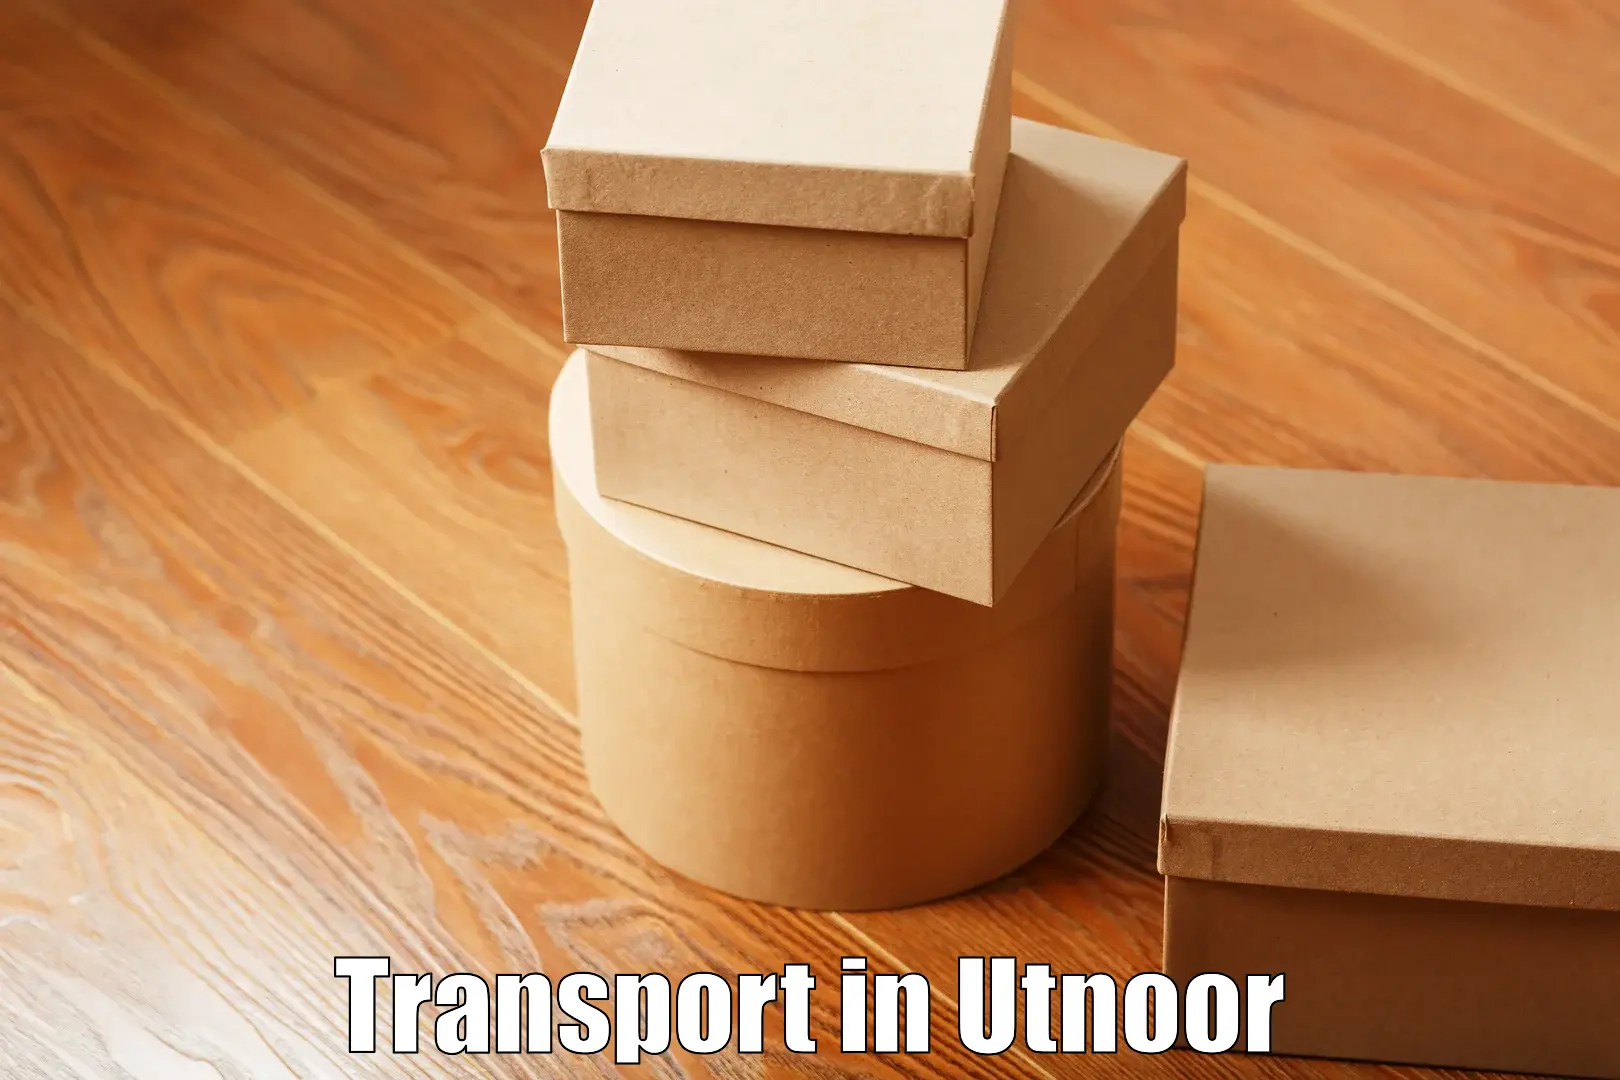 Commercial transport service in Utnoor